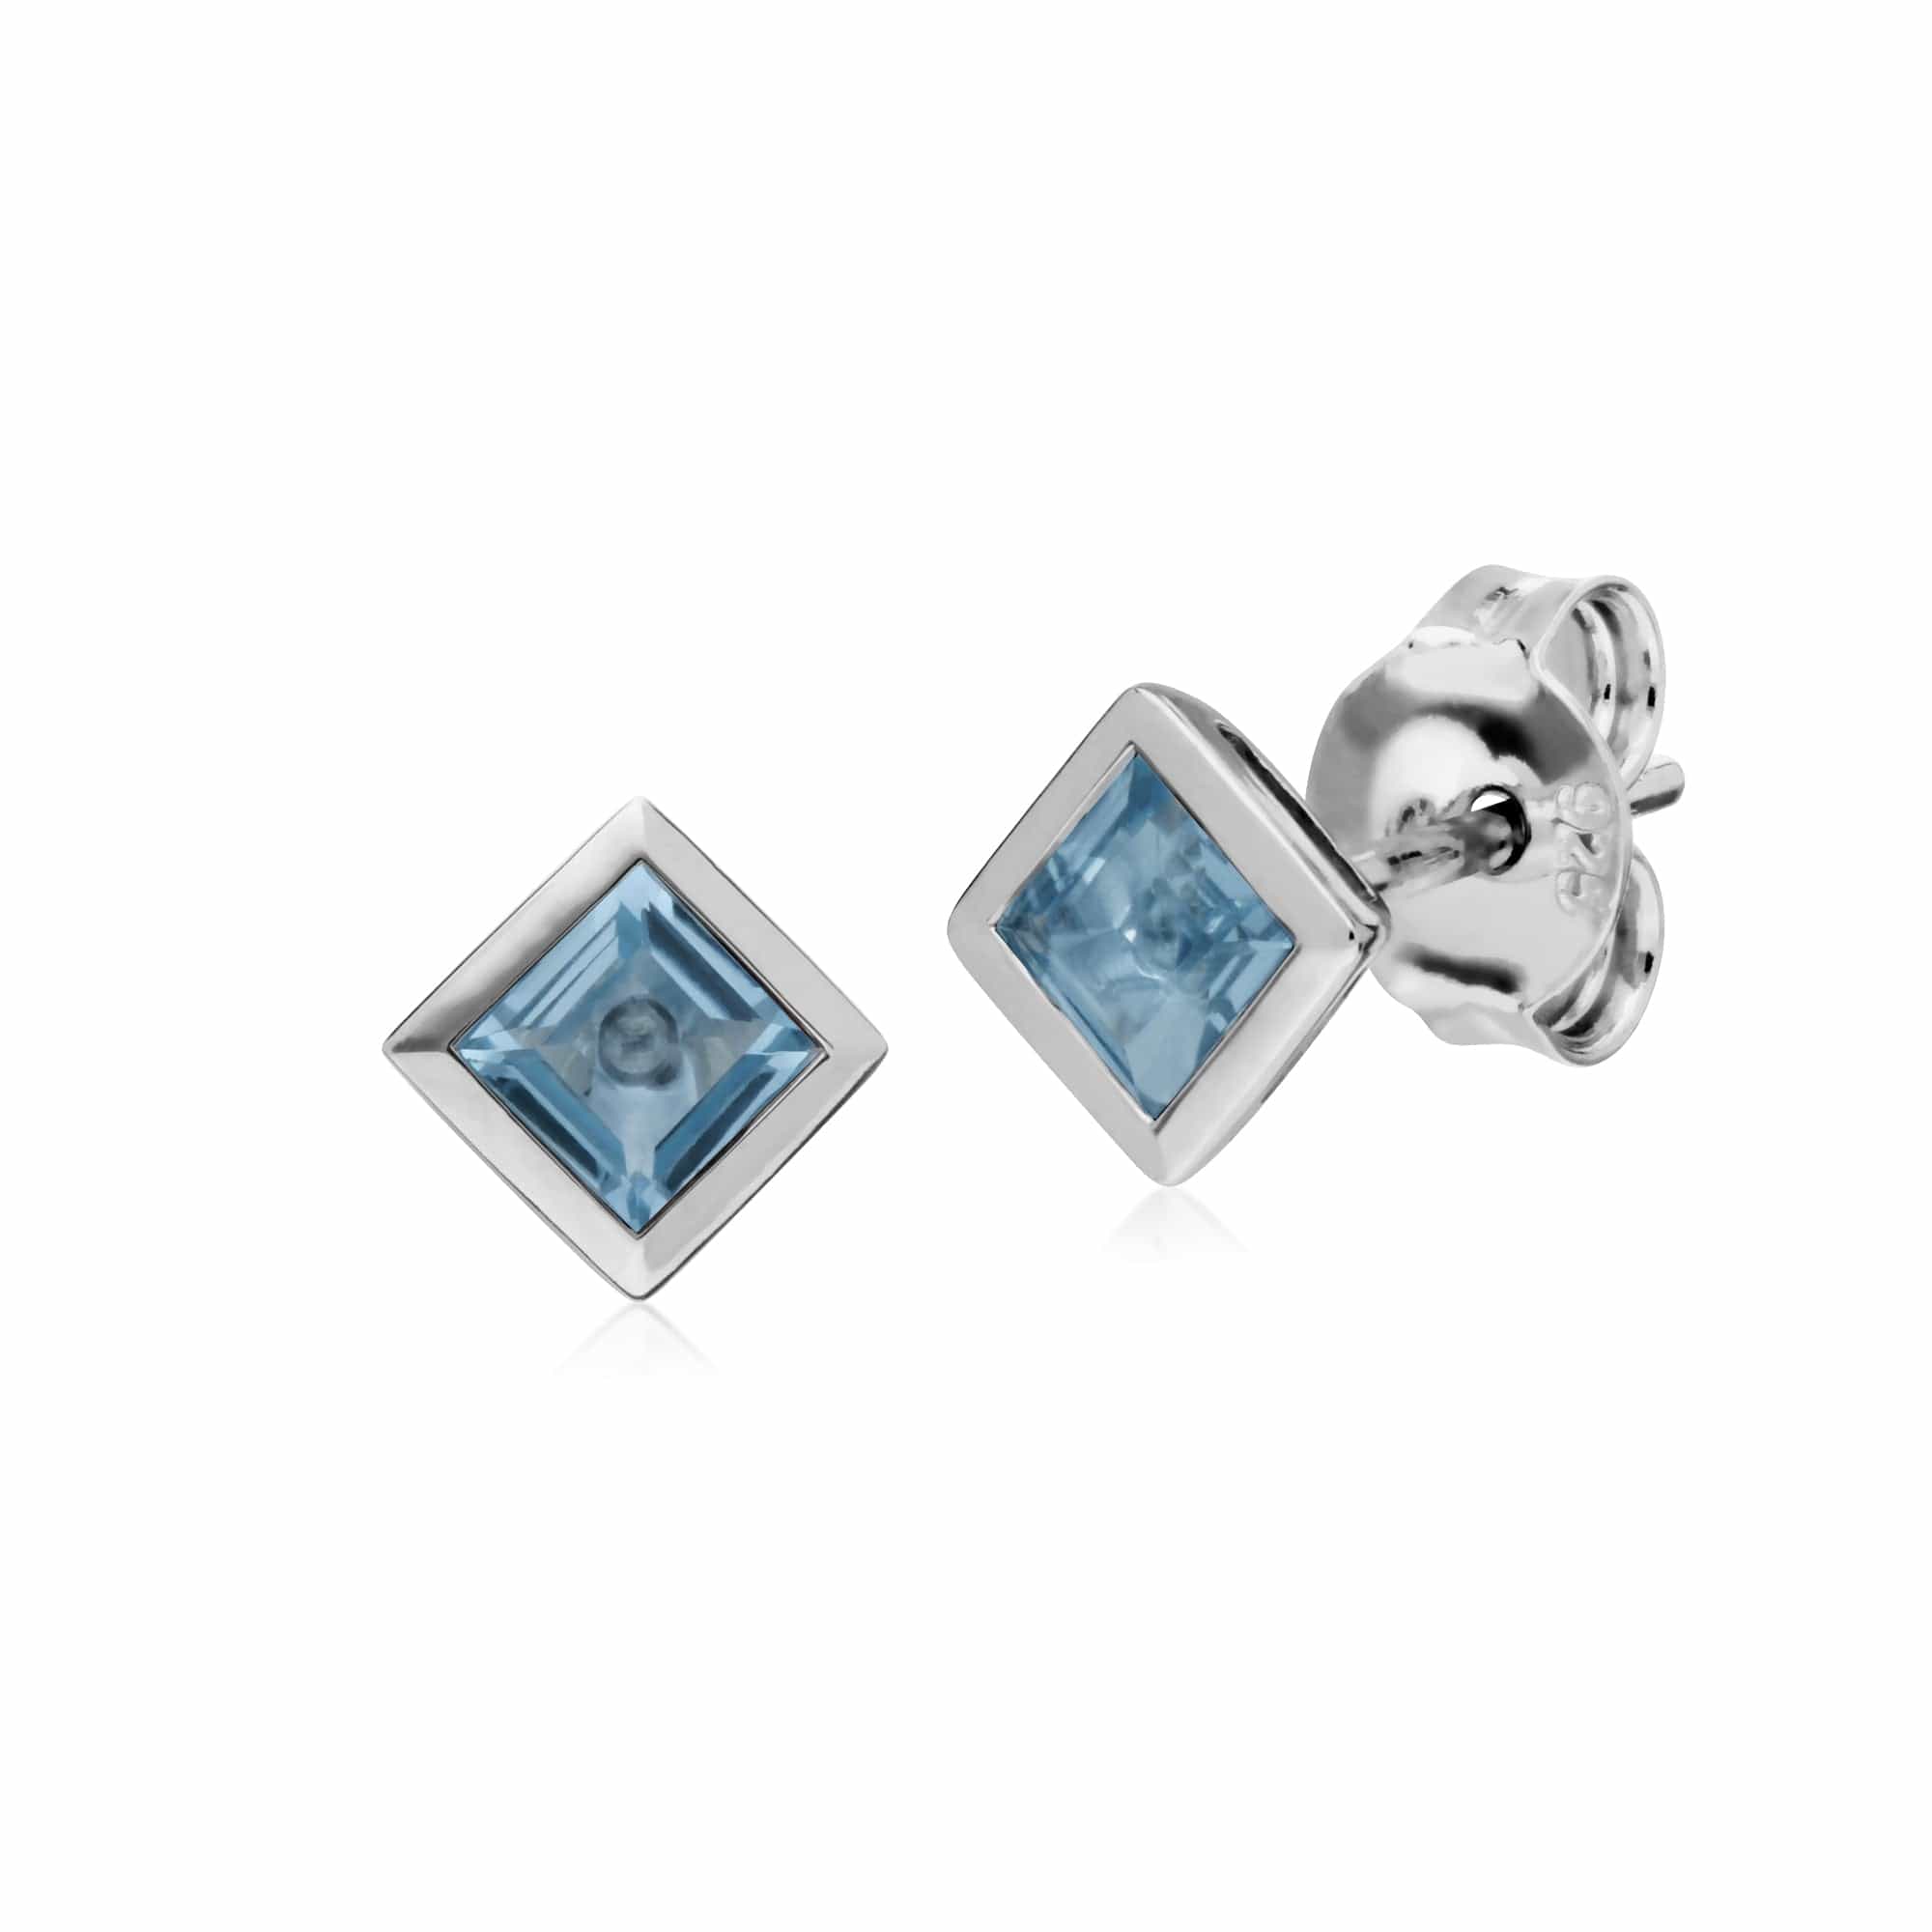 Classic Square Blue Topaz Bezel Stud Earrings in 925 Sterling Silver - Gemondo